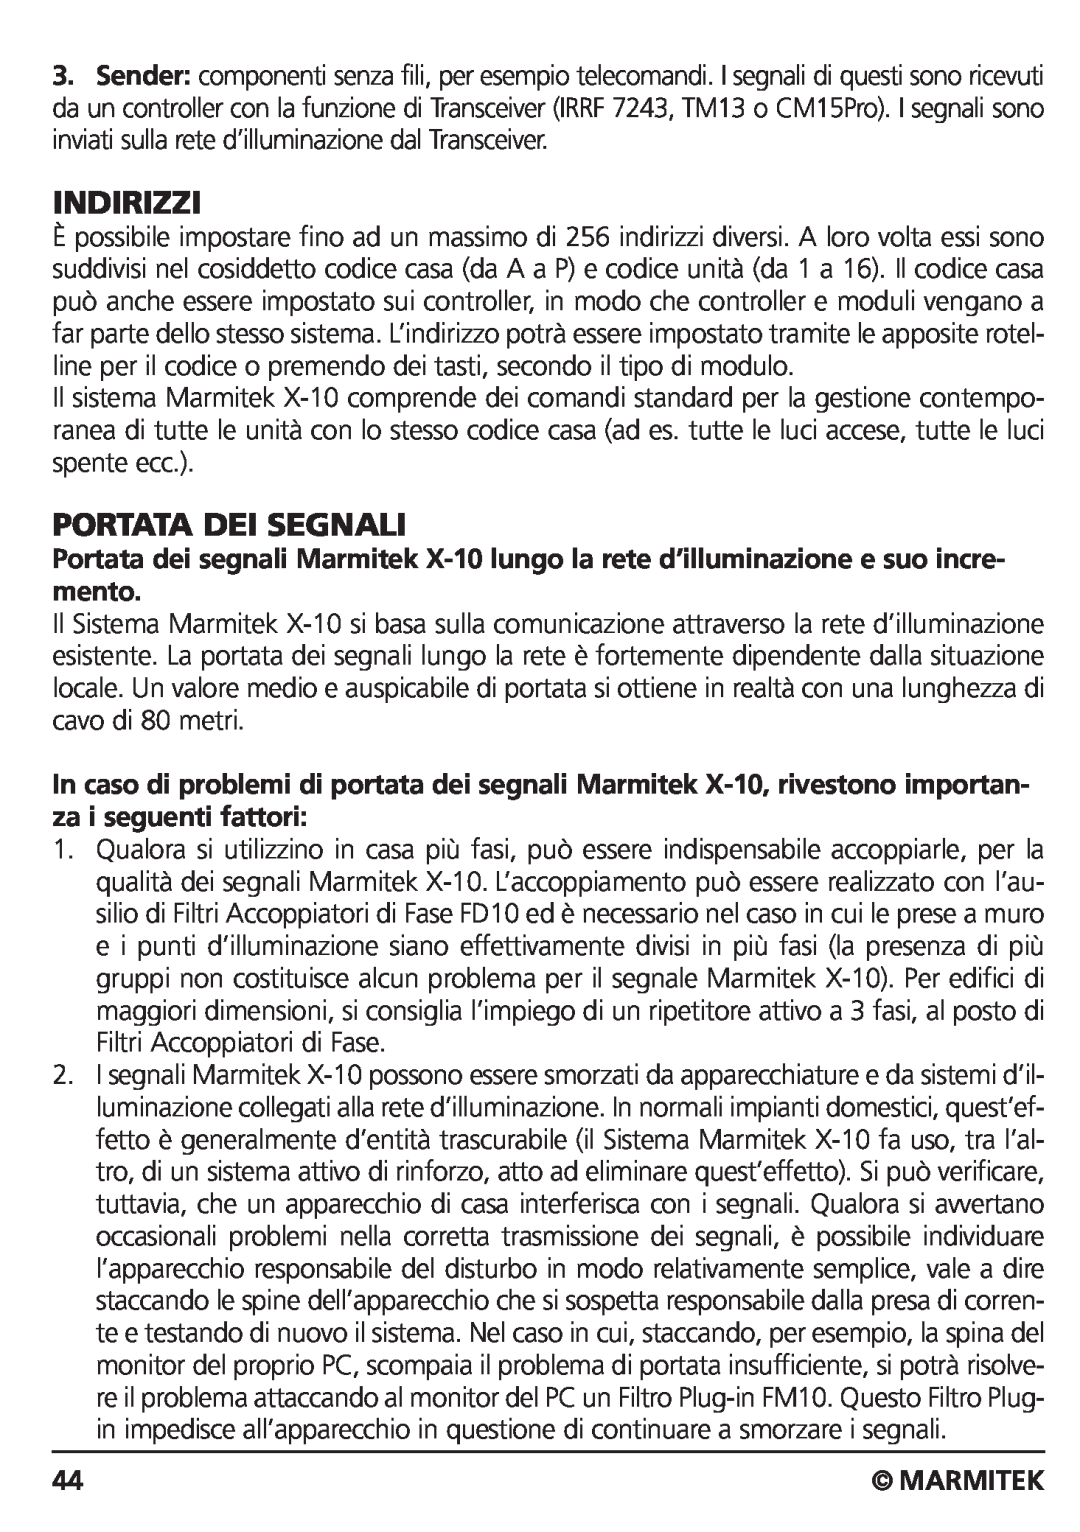 Marmitek CM15PRO manual Indirizzi, Portata Dei Segnali, Marmitek 